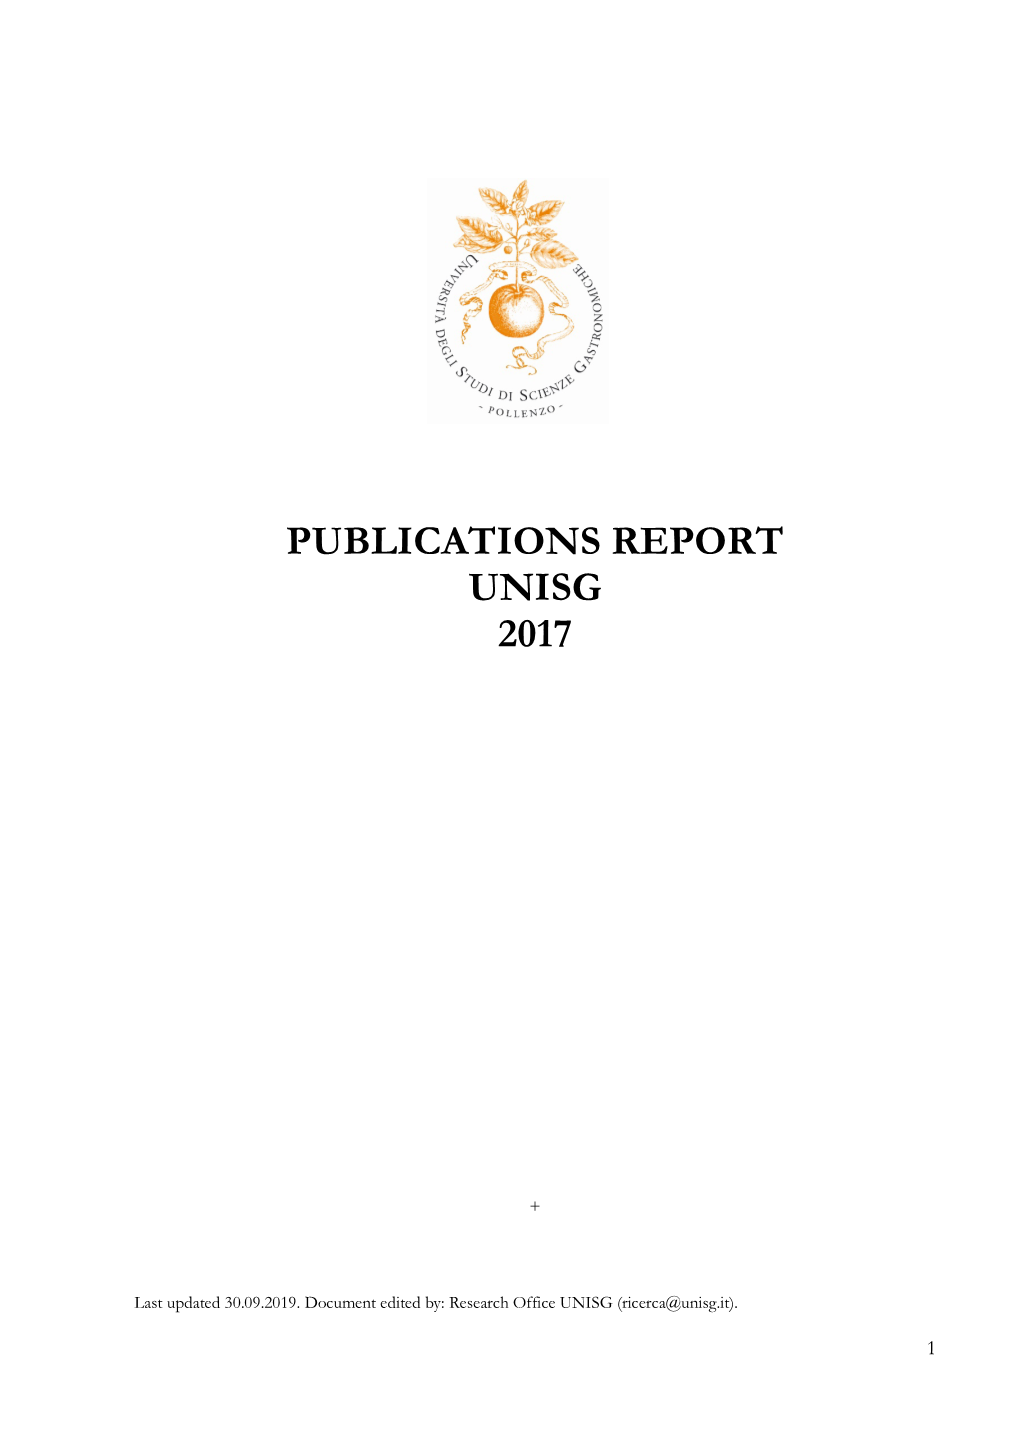 Publications Report Unisg 2017